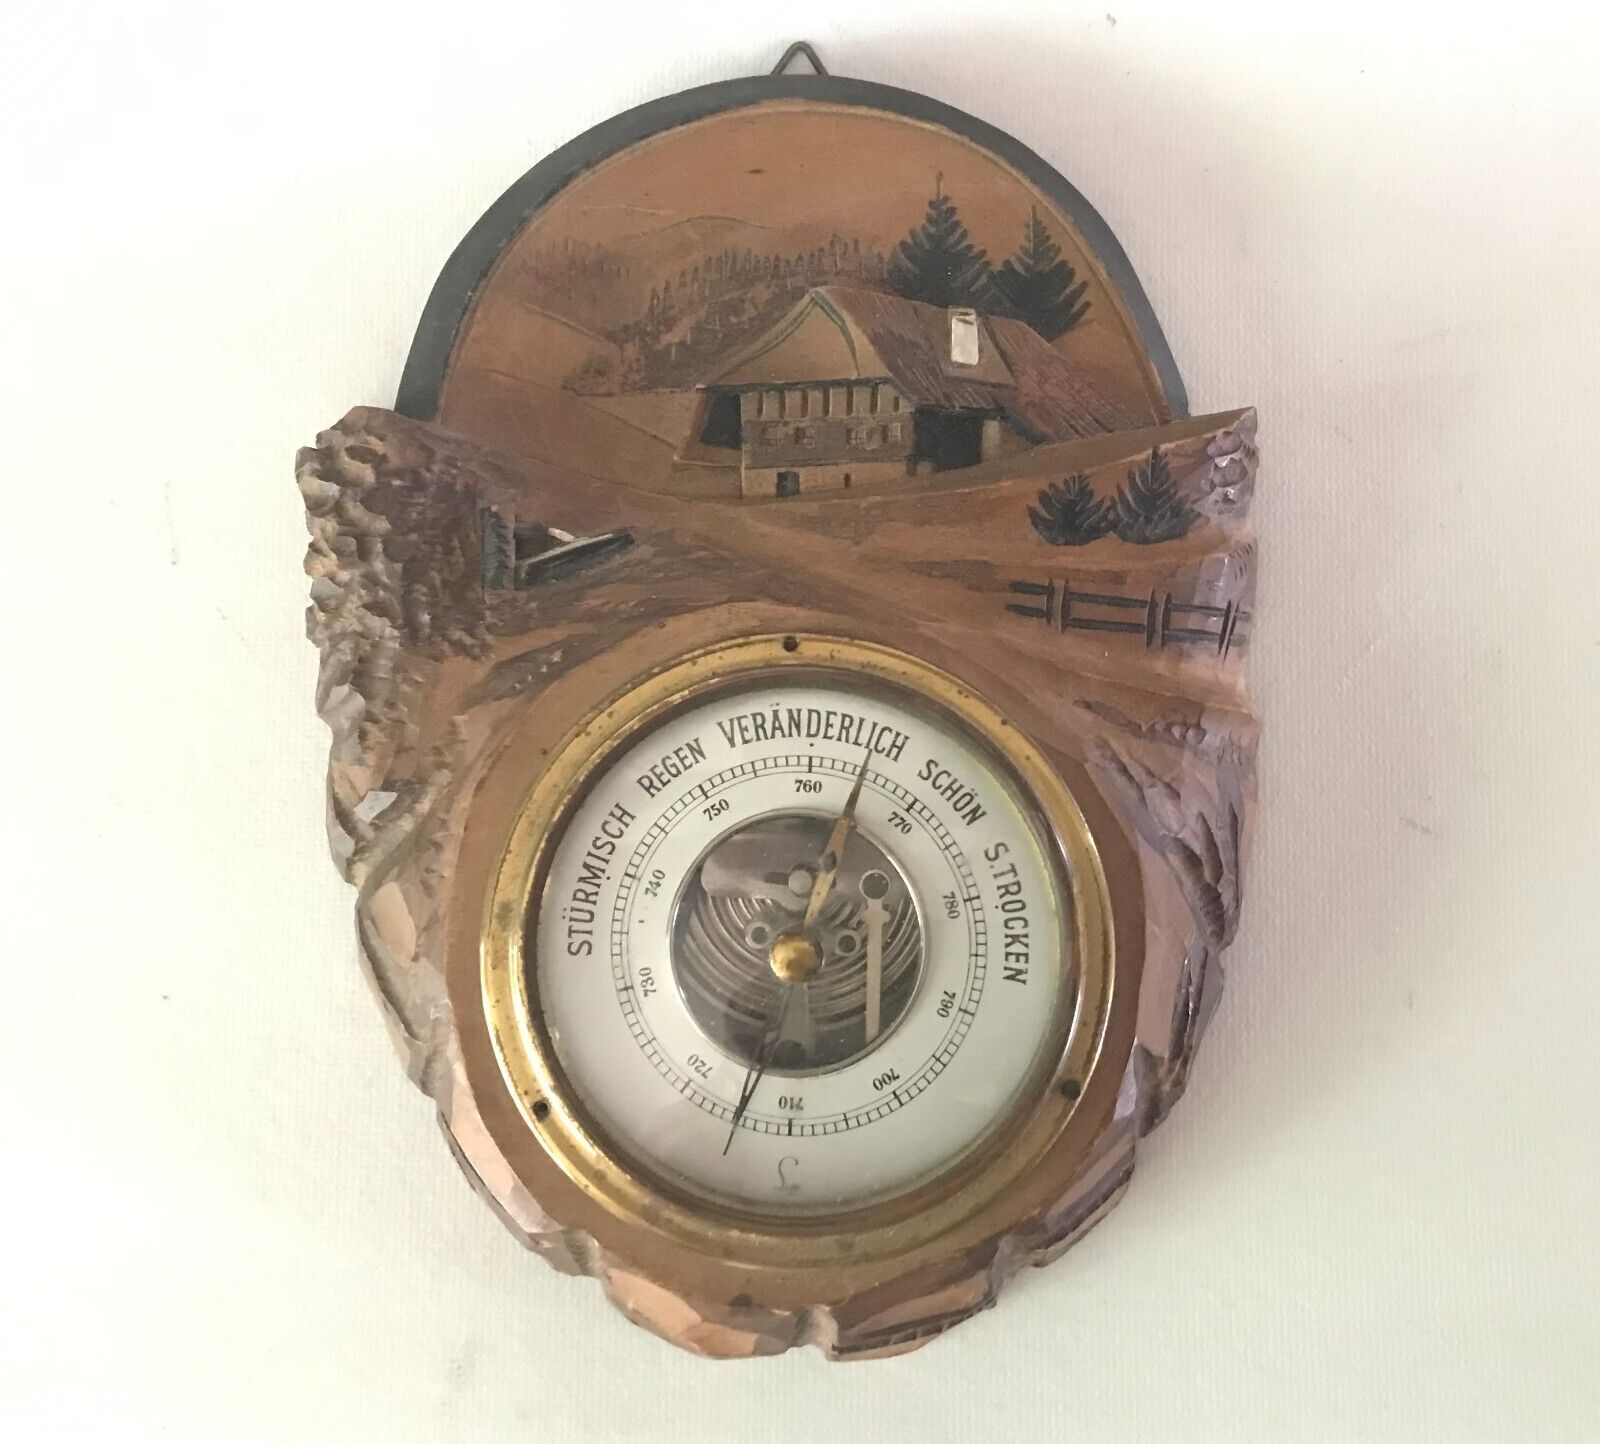 Lufft 5450 Vintage BLACK FOREST Wood Chalet Barometer - Germany